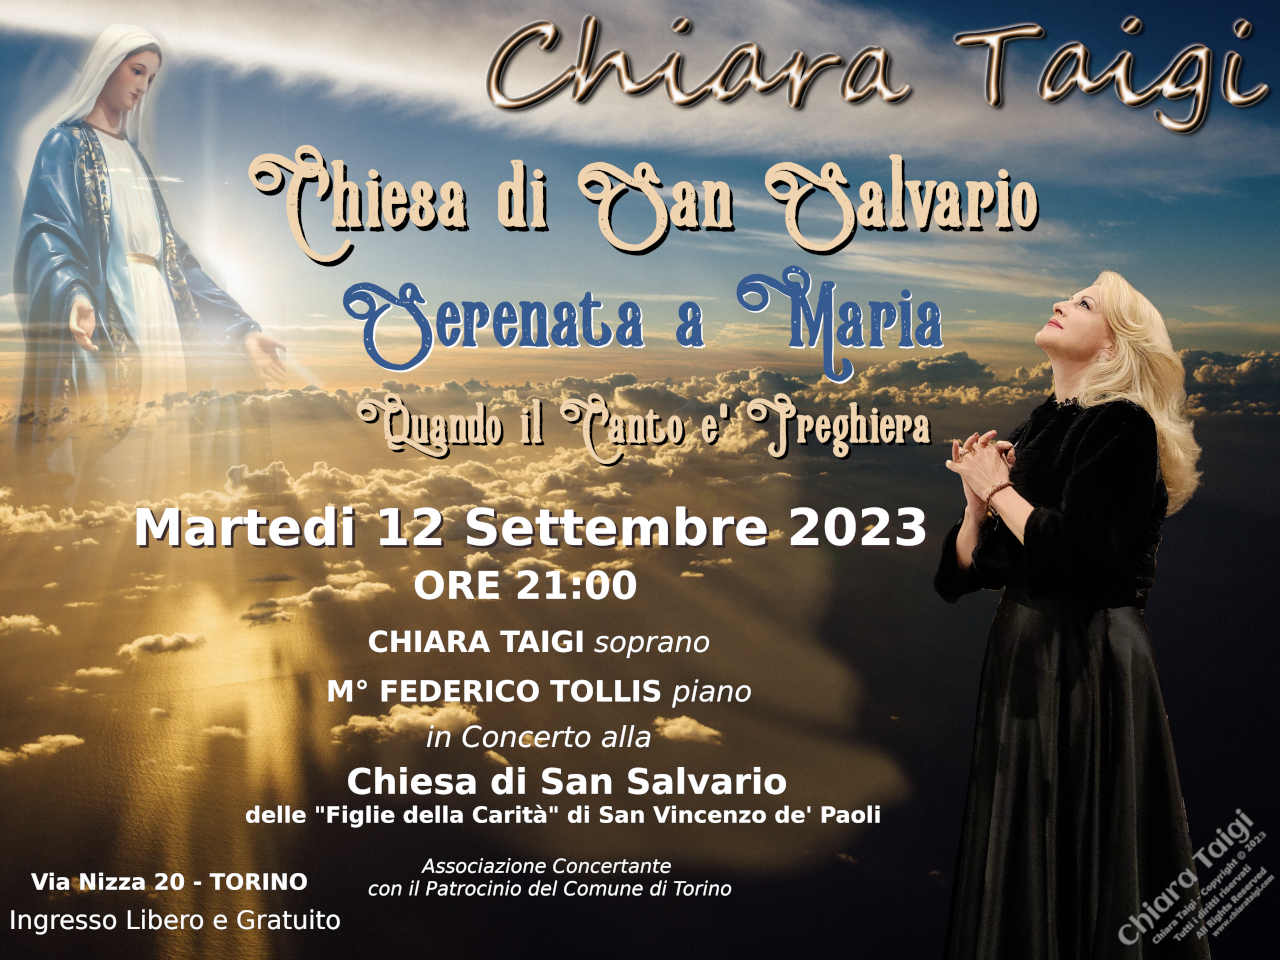 CHIARA TAIGI in Concerto Serenata a Maria - Chiesa di San Salvario - Torino - Martedì 12 Settembre 2023 ore 21